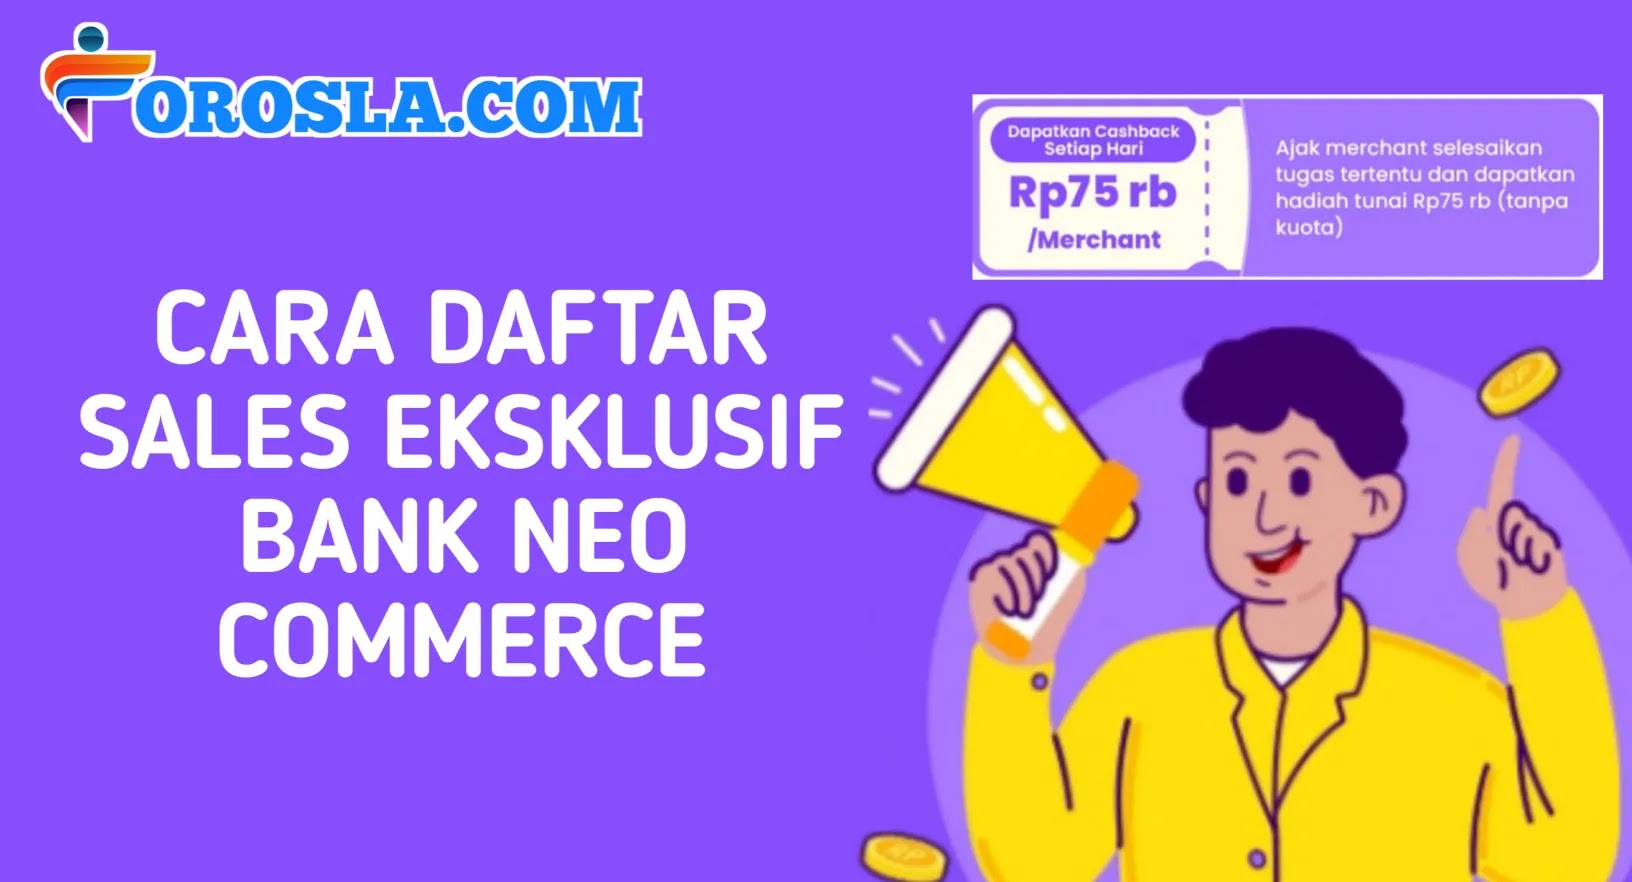 Cara Daftar Sales Eksklusif Bank Neo Commerce Terbaru